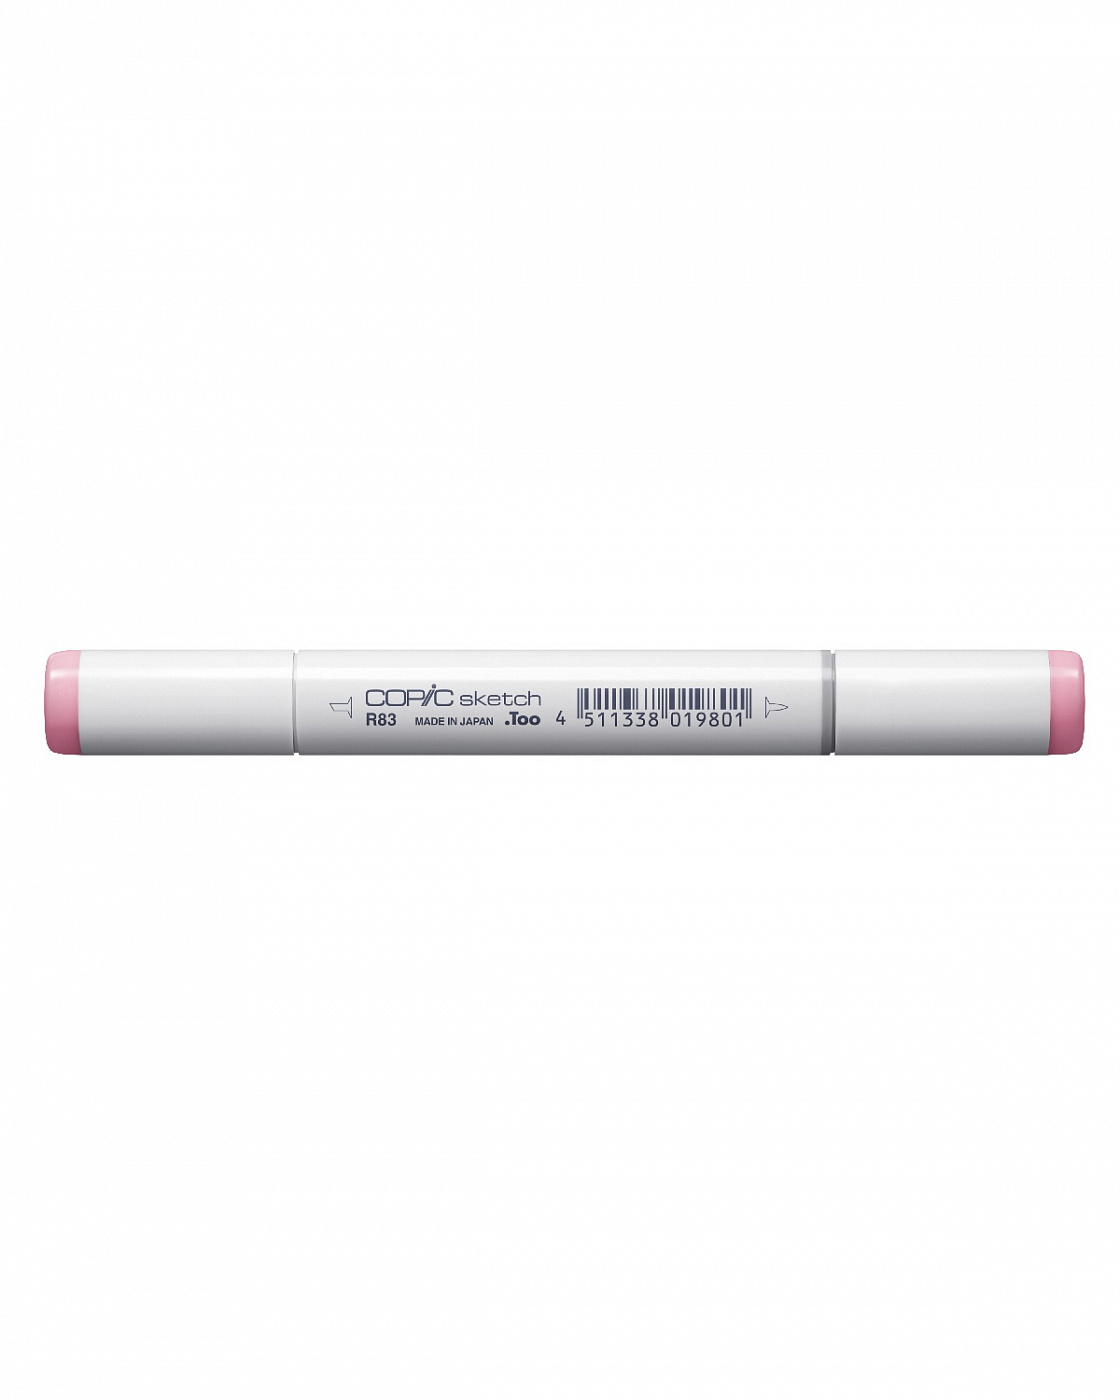 Маркер COPIC sketch R83 (розовый туман, rose mistl) маркер текстовыделитель schneider job 1 0 5 0 мм чернила на водной основе розовый